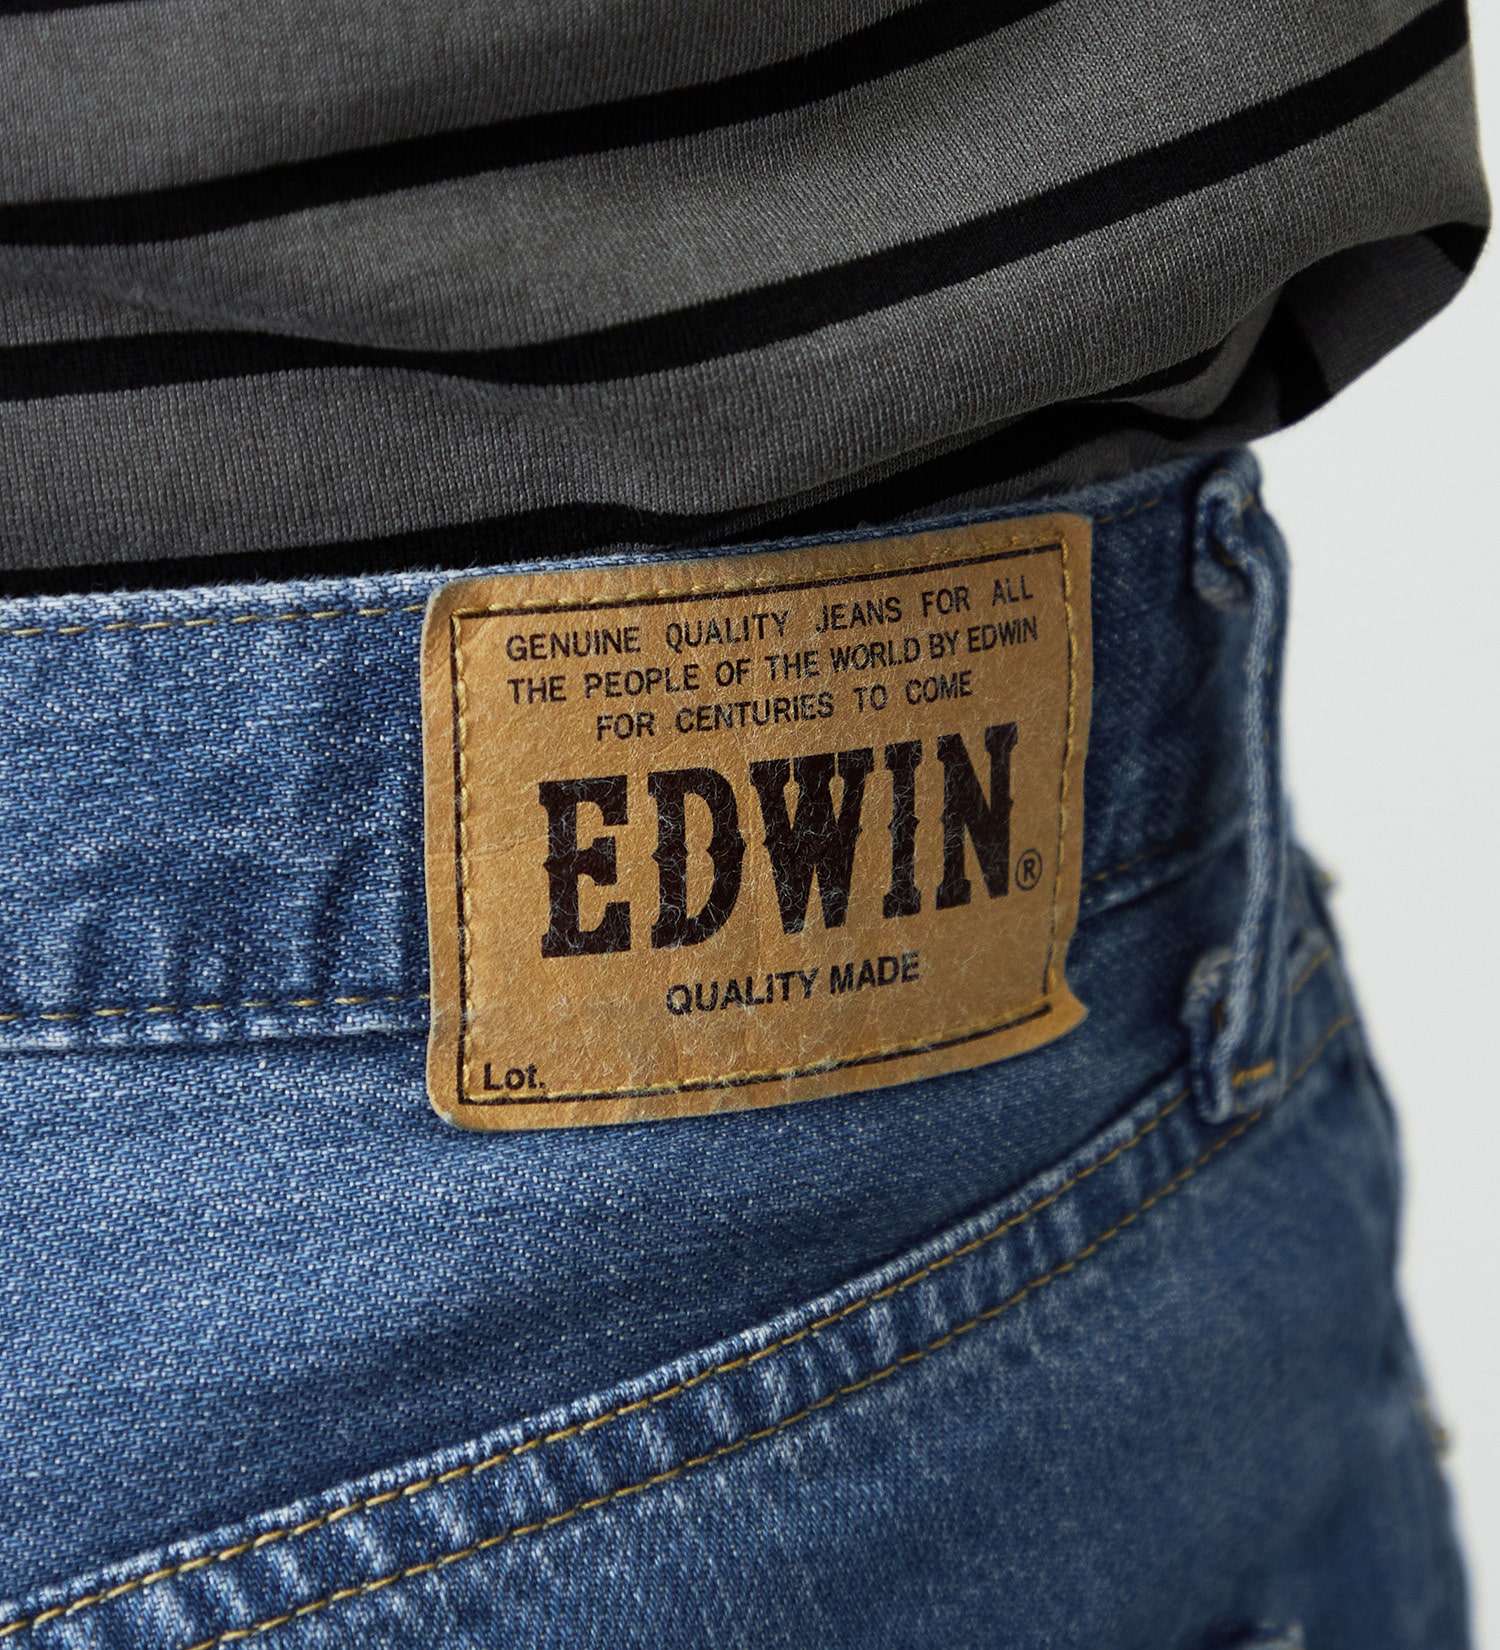 EDWIN(エドウイン)の【大きいサイズ】EDWIN BASIC クロップドデニムパンツ|パンツ/ショート丈/メンズ|中色ブルー